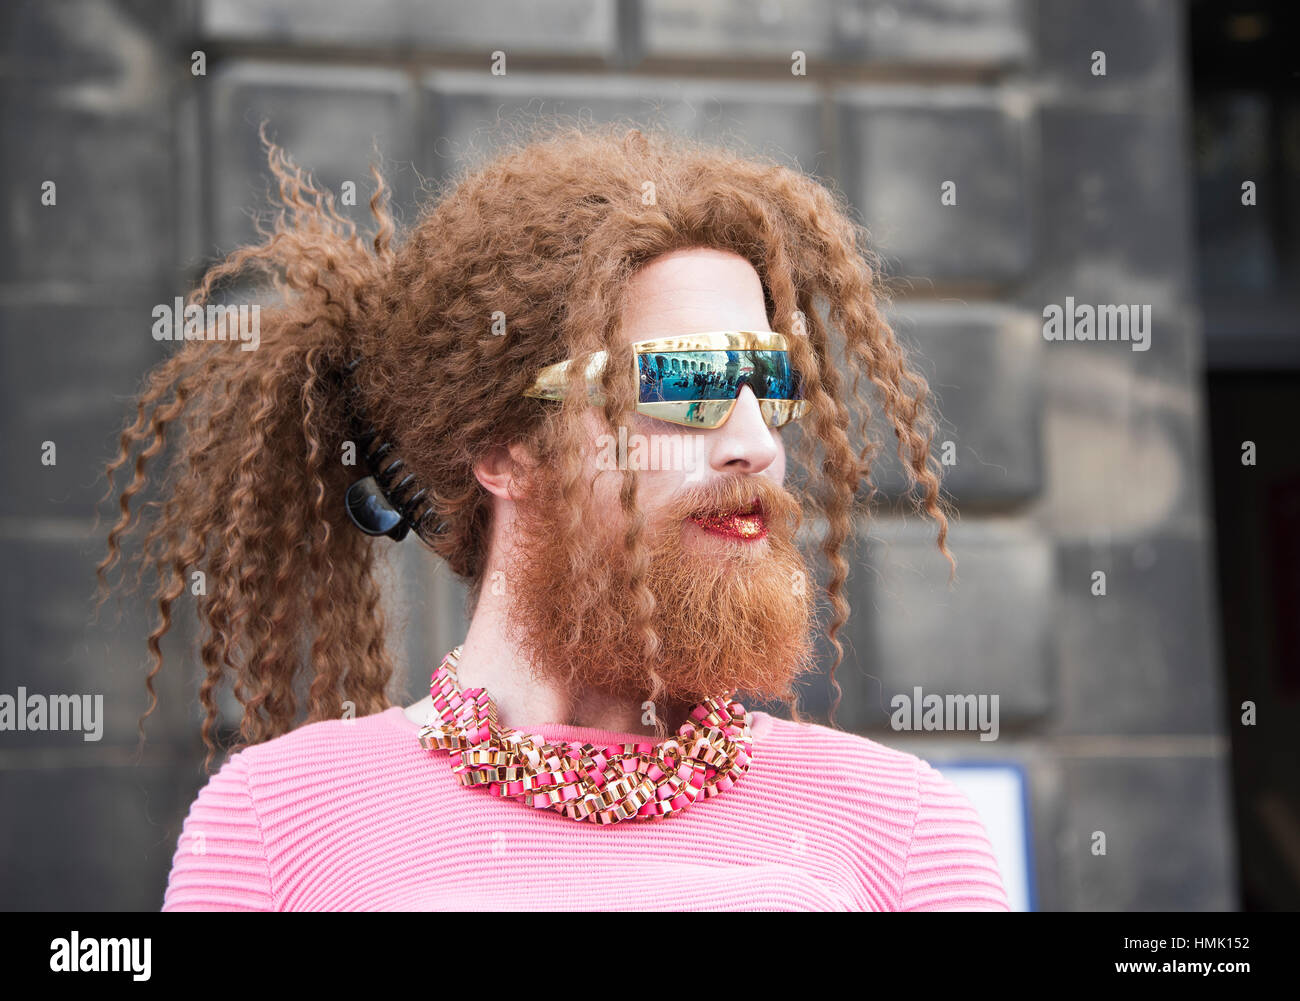 Edinburgh Fringe performer in High Street advertising show Stock Photo